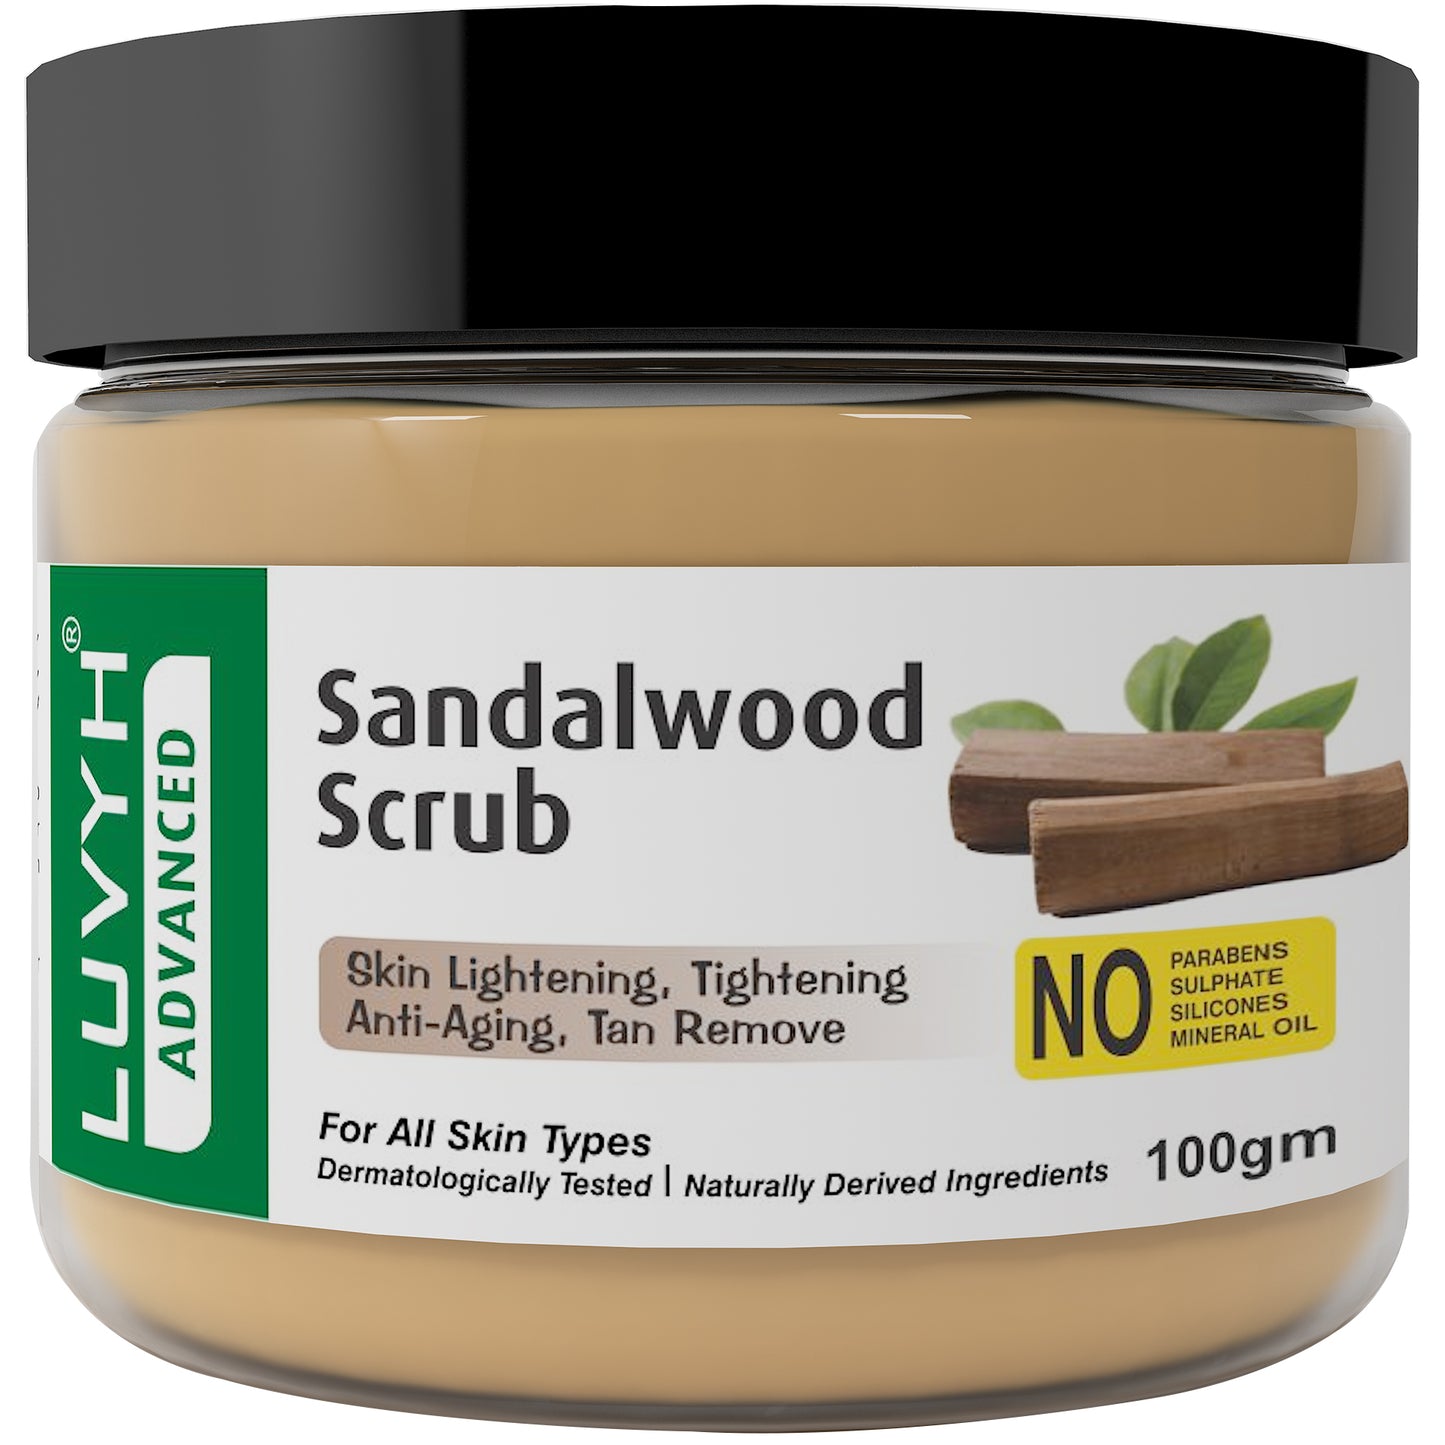 Luvyh Sandalwood Scrub - 100gm